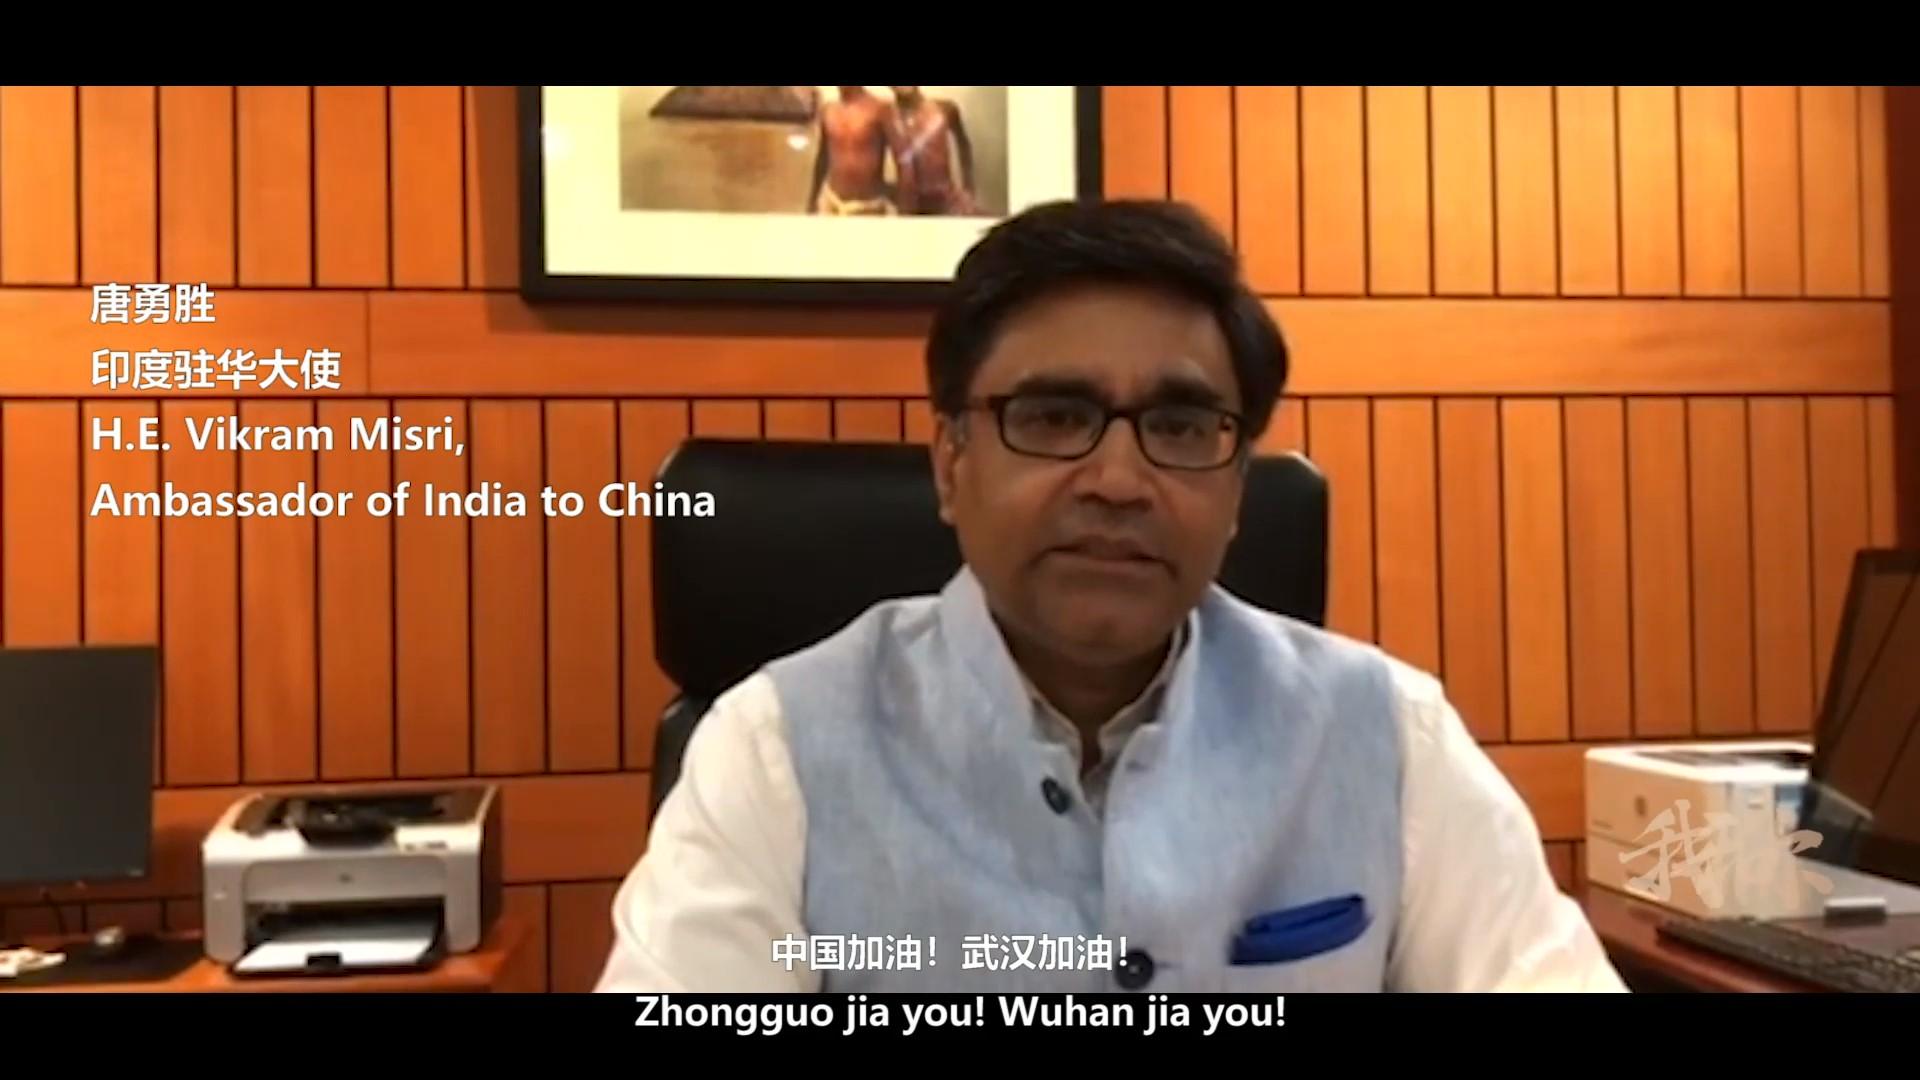 《我和你》印度中国携手 齐心应对挑战——印中人民抗击疫情、共渡难关